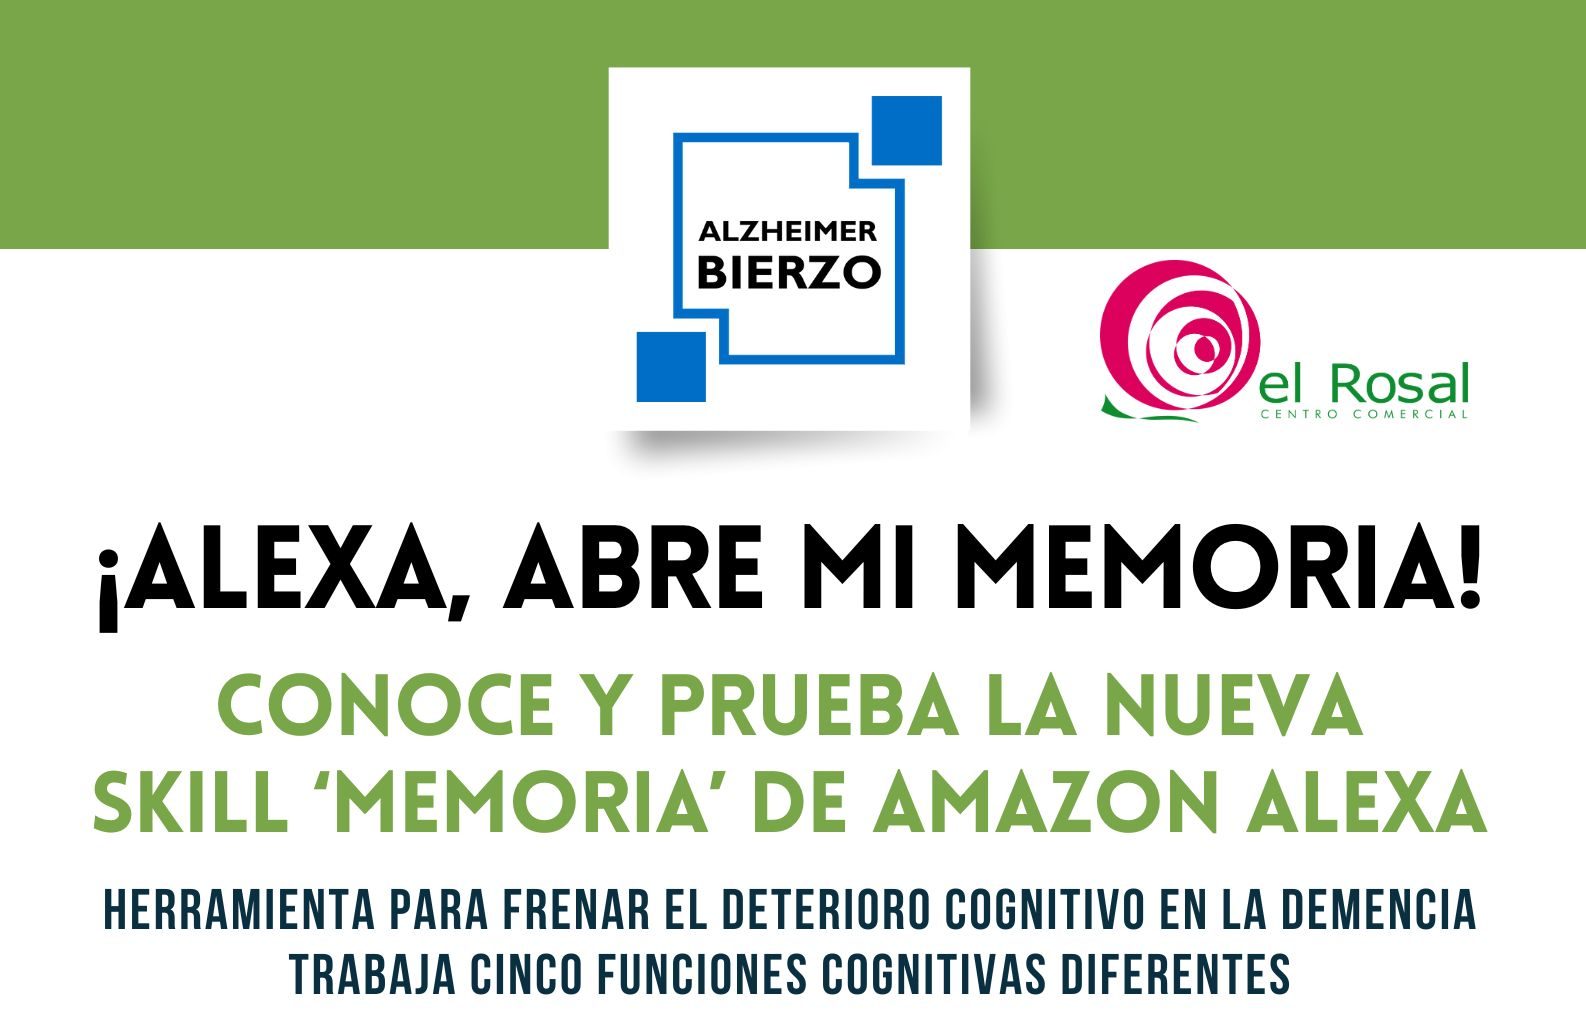 Alzheimer Bierzo crea la Skill 'Memoria' y la presenta en el Centro Comercial El Rosal 1